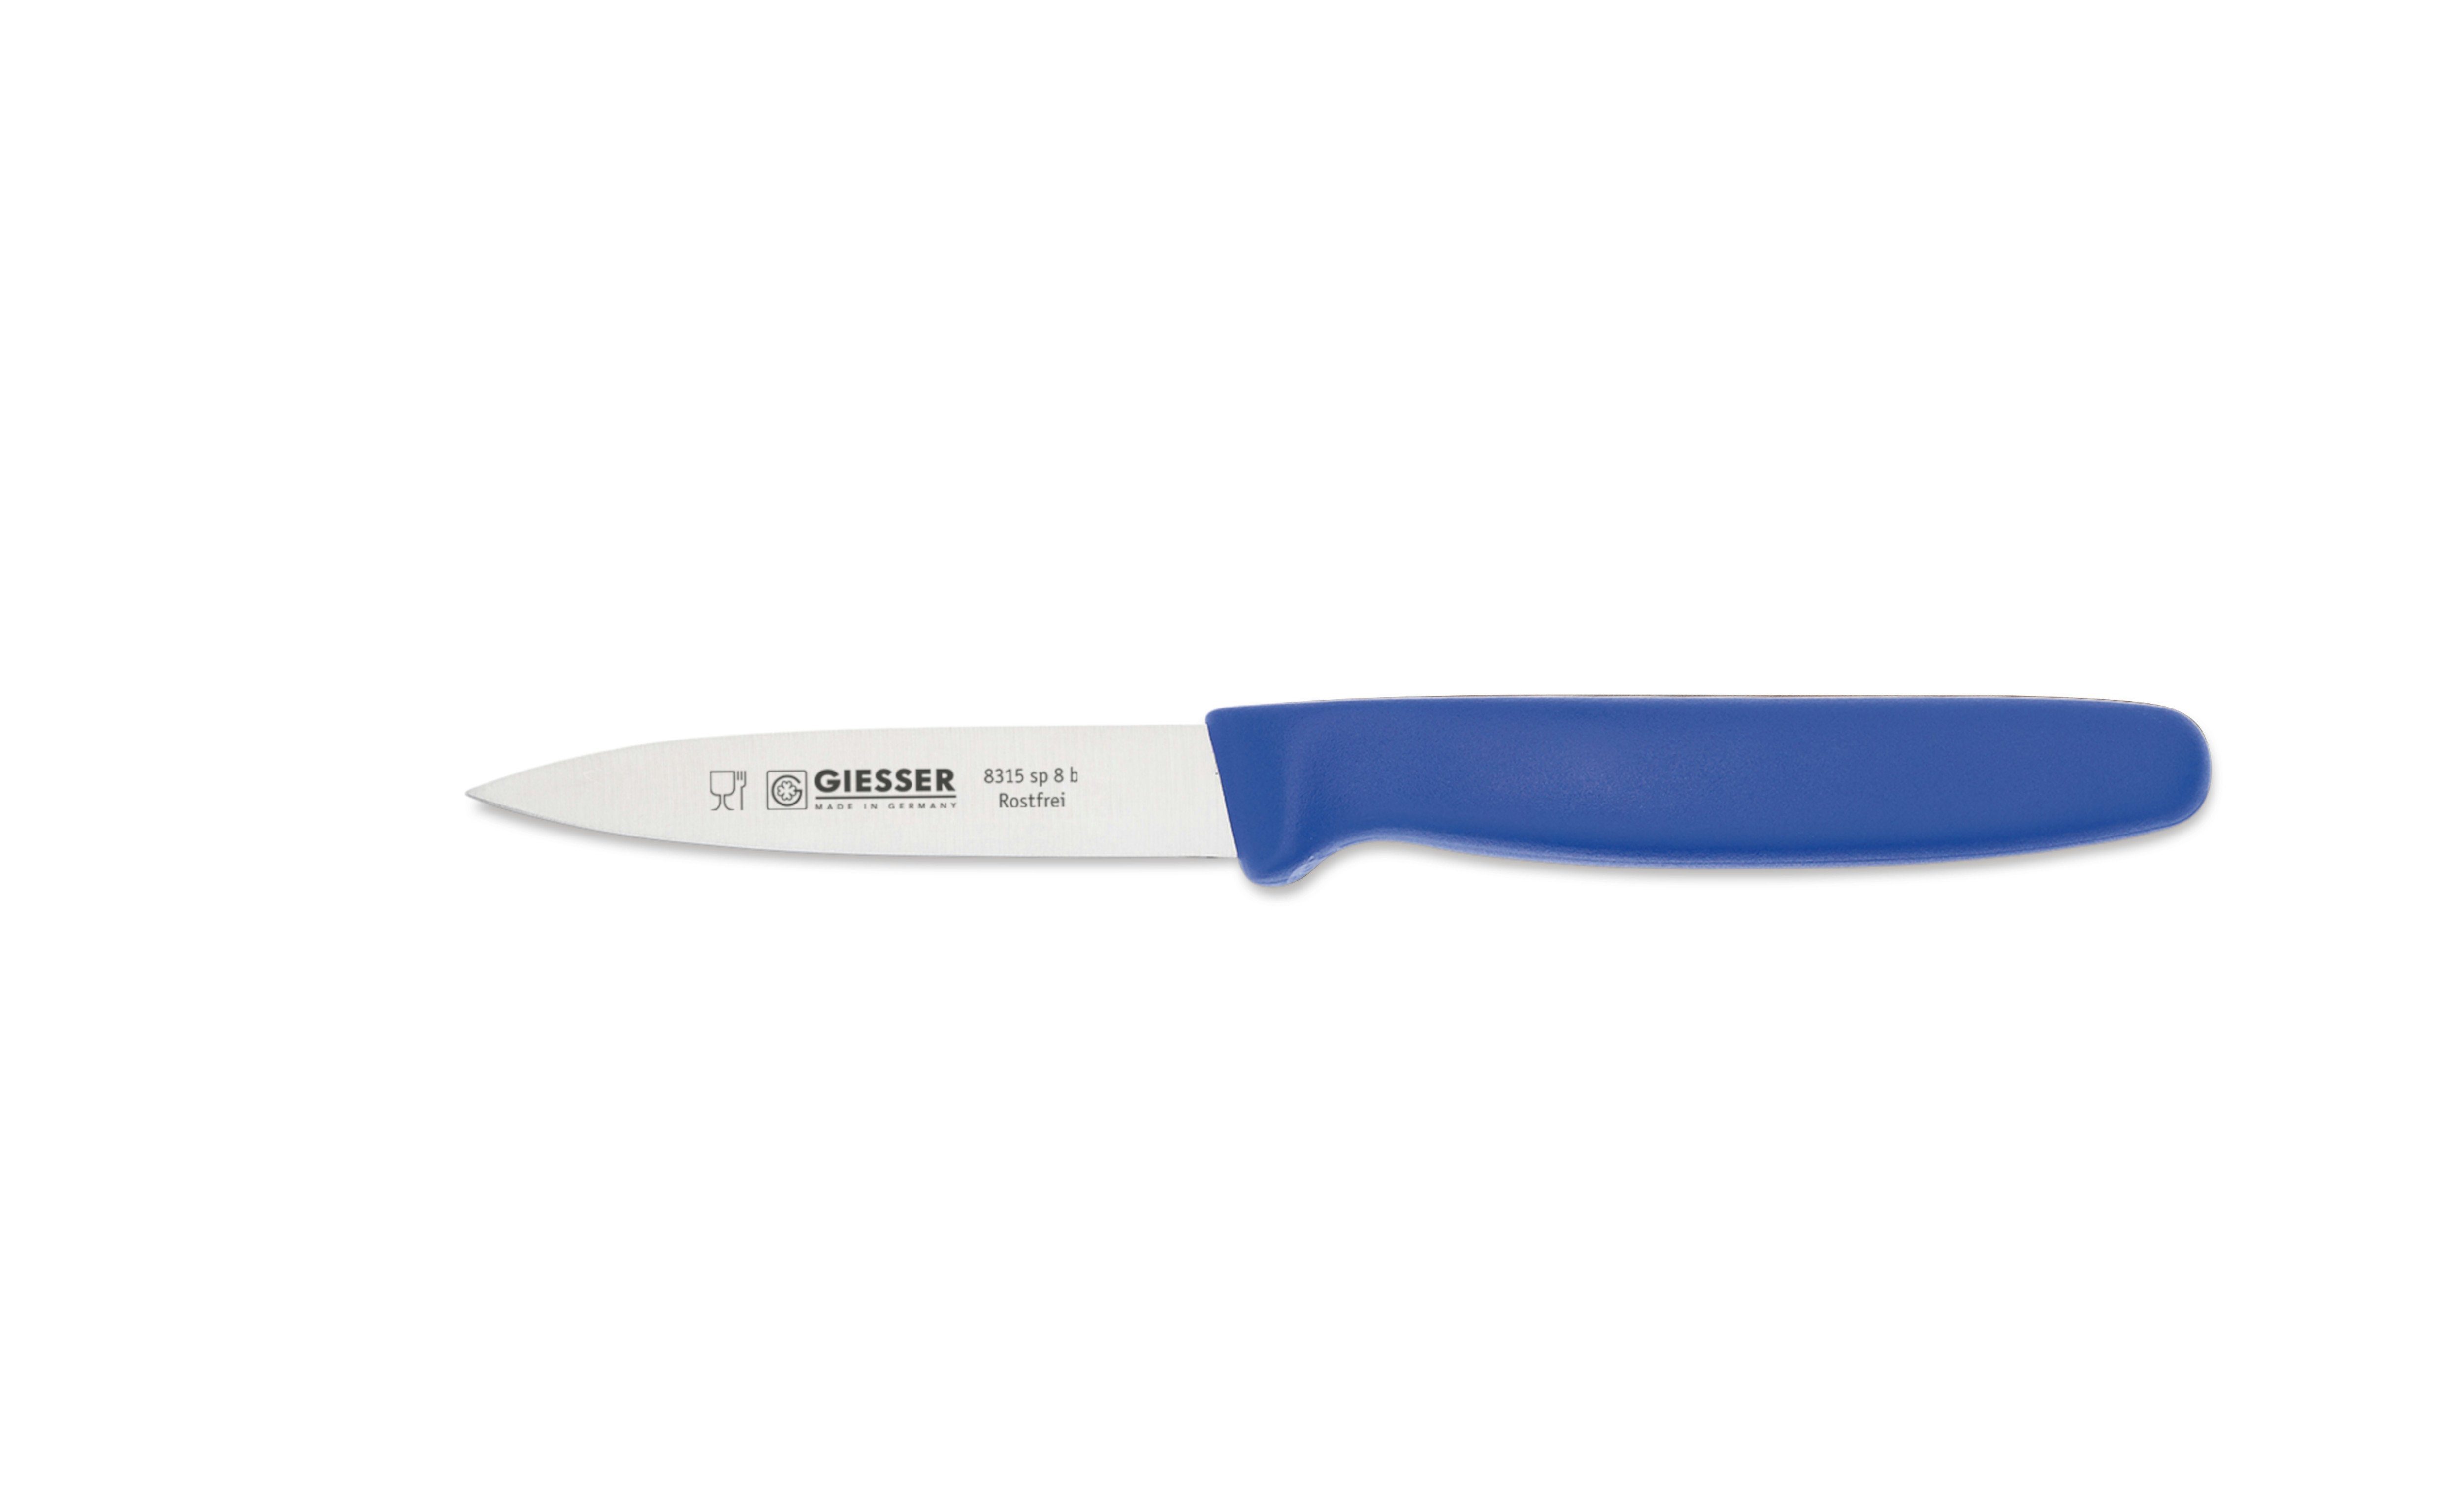 Giesser Messer Gemüsemesser Spickmesser 8315 sp 8/10/12, Küchenmesser mit oder ohne 3mm Wellenschliff Blau